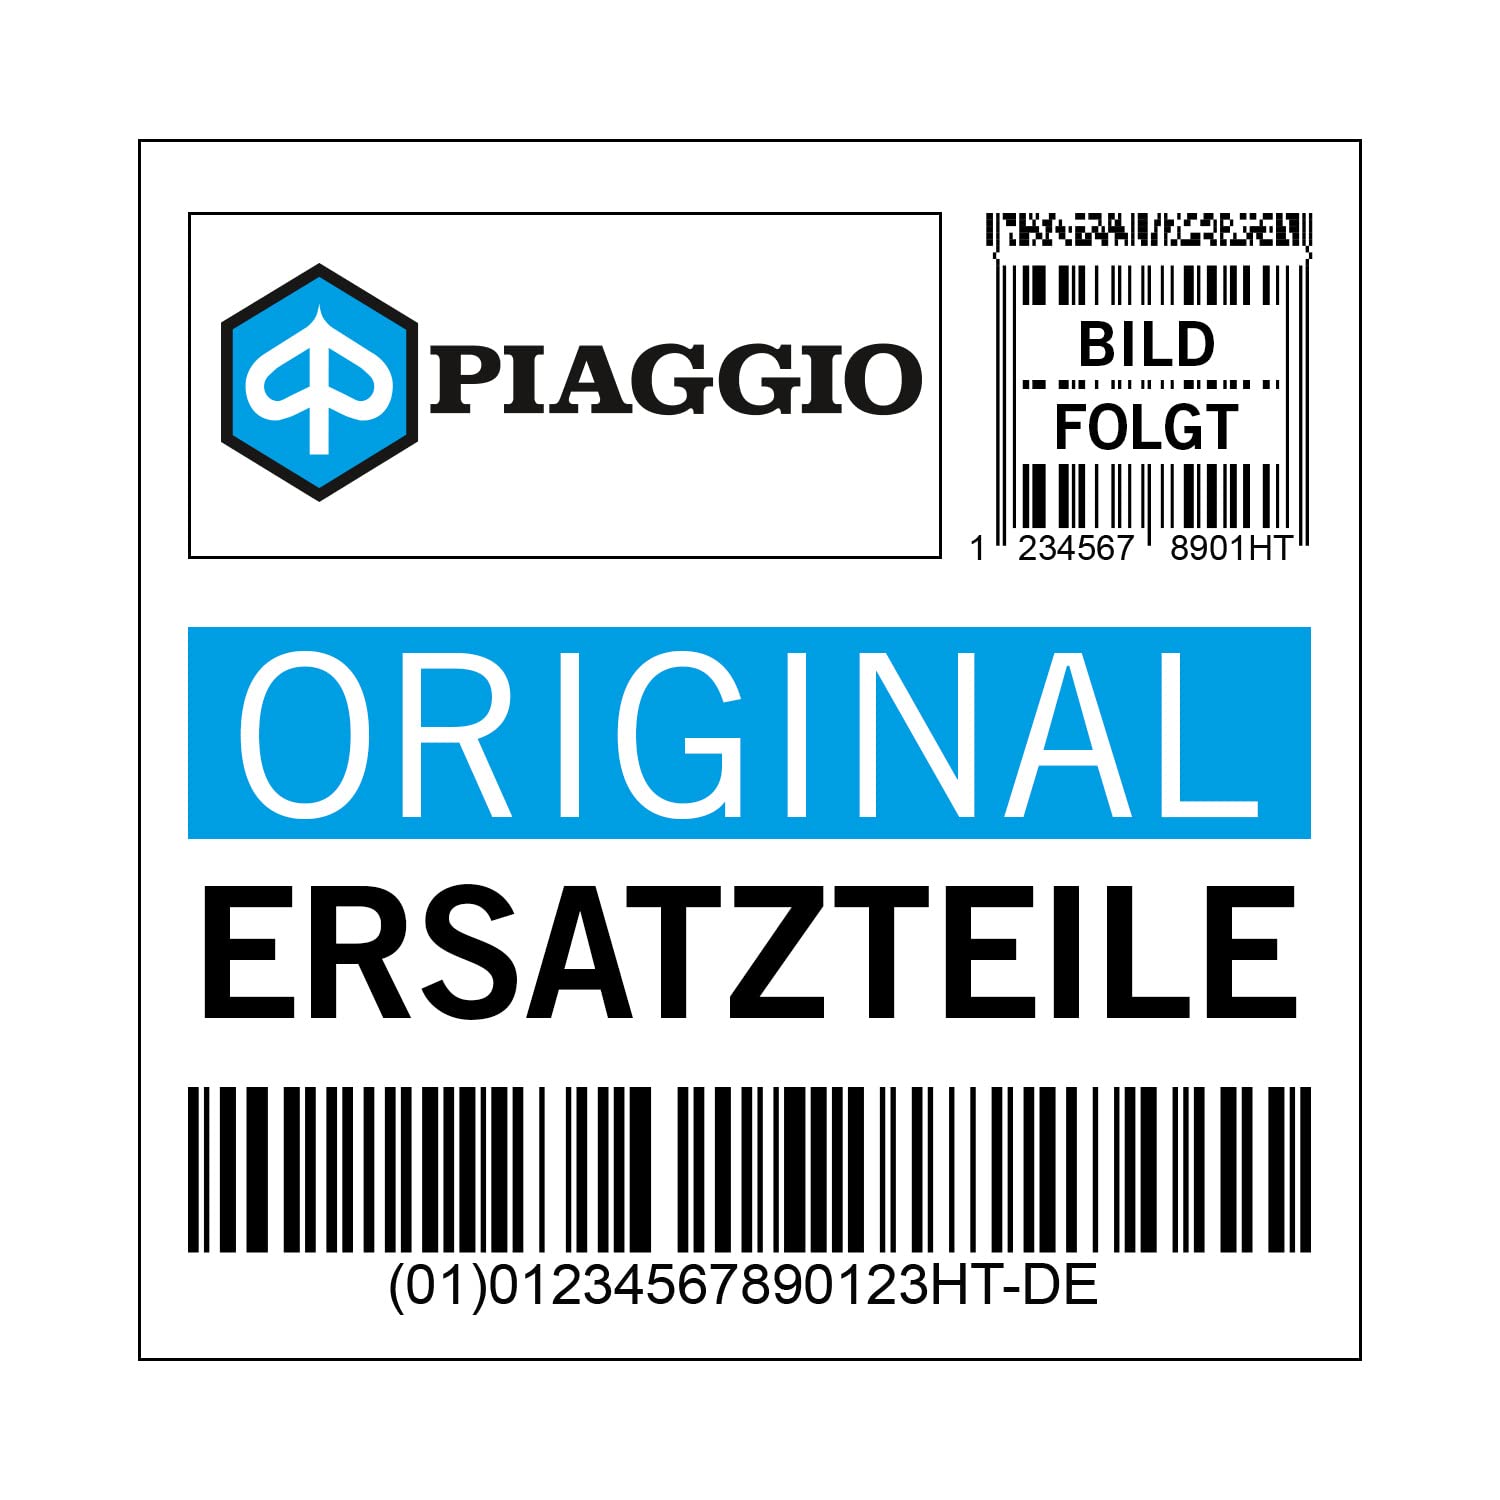 Kaskade Piaggio Verkleidung Horn, schwarz, 90 schwarz glänzend 094 für Vespa GTS Bj. 2014, 1B00088500090 von Maxtuned